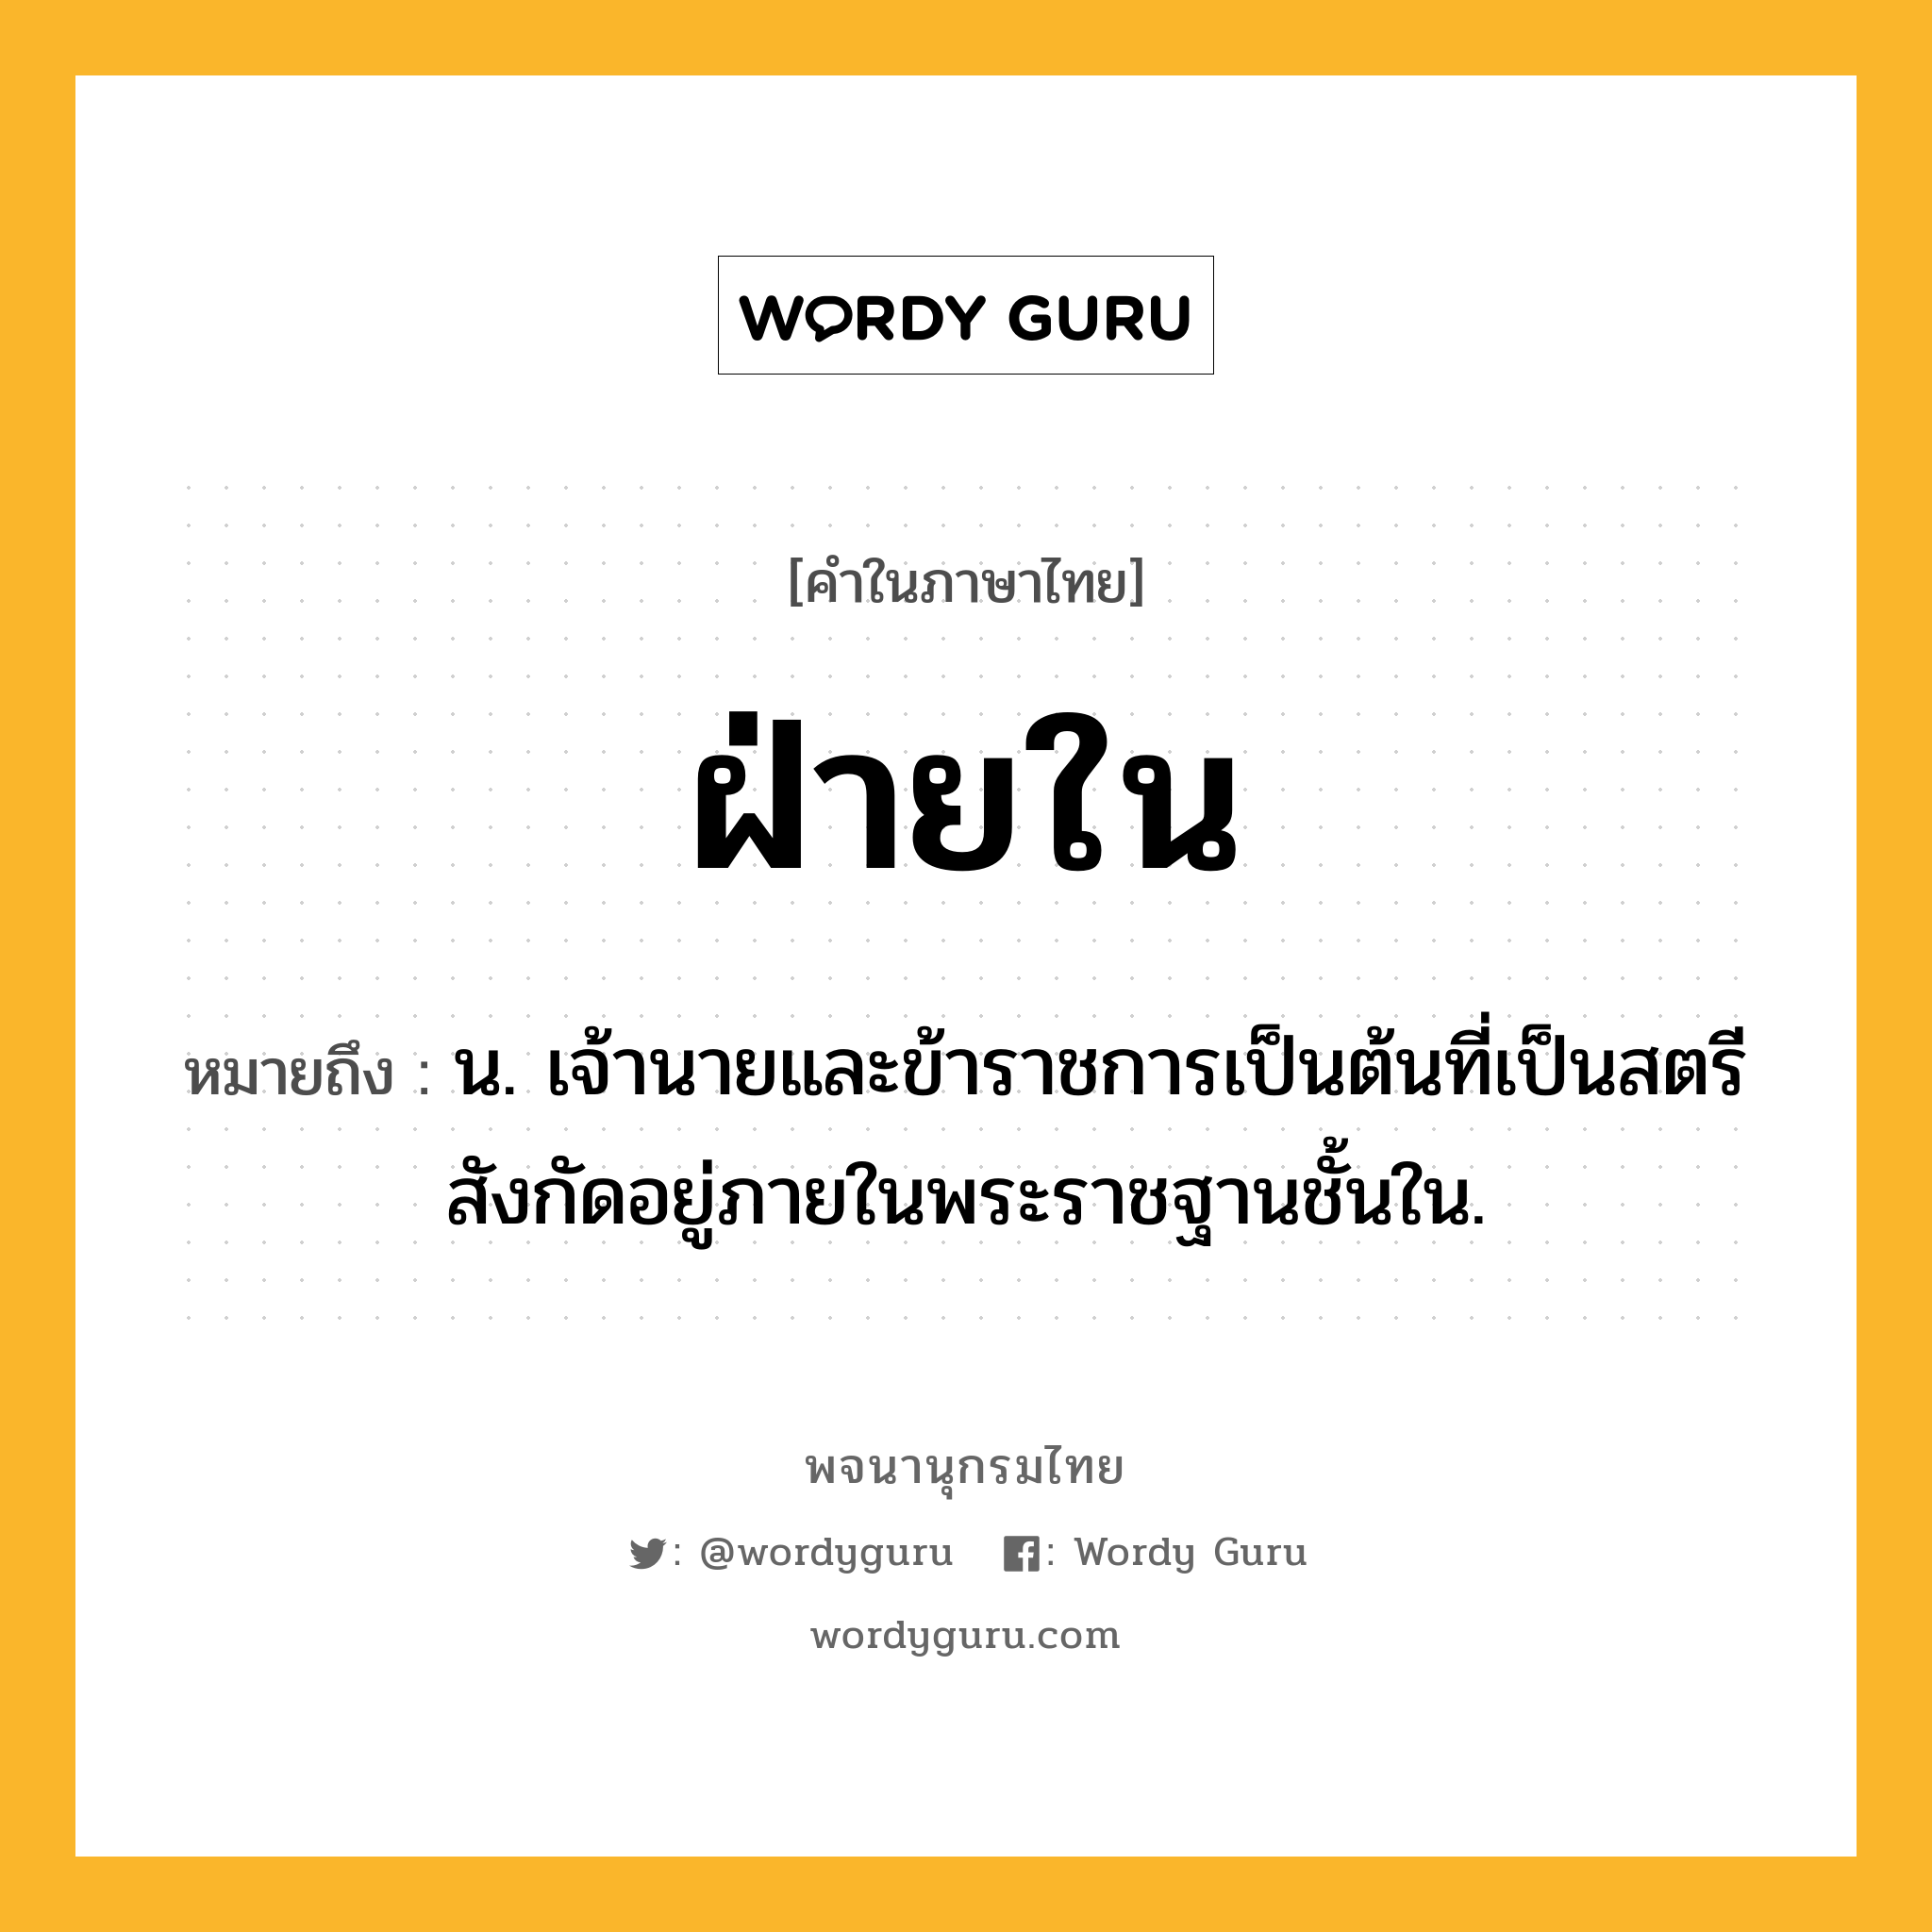 ฝ่ายใน หมายถึงอะไร?, คำในภาษาไทย ฝ่ายใน หมายถึง น. เจ้านายและข้าราชการเป็นต้นที่เป็นสตรีสังกัดอยู่ภายในพระราชฐานชั้นใน.